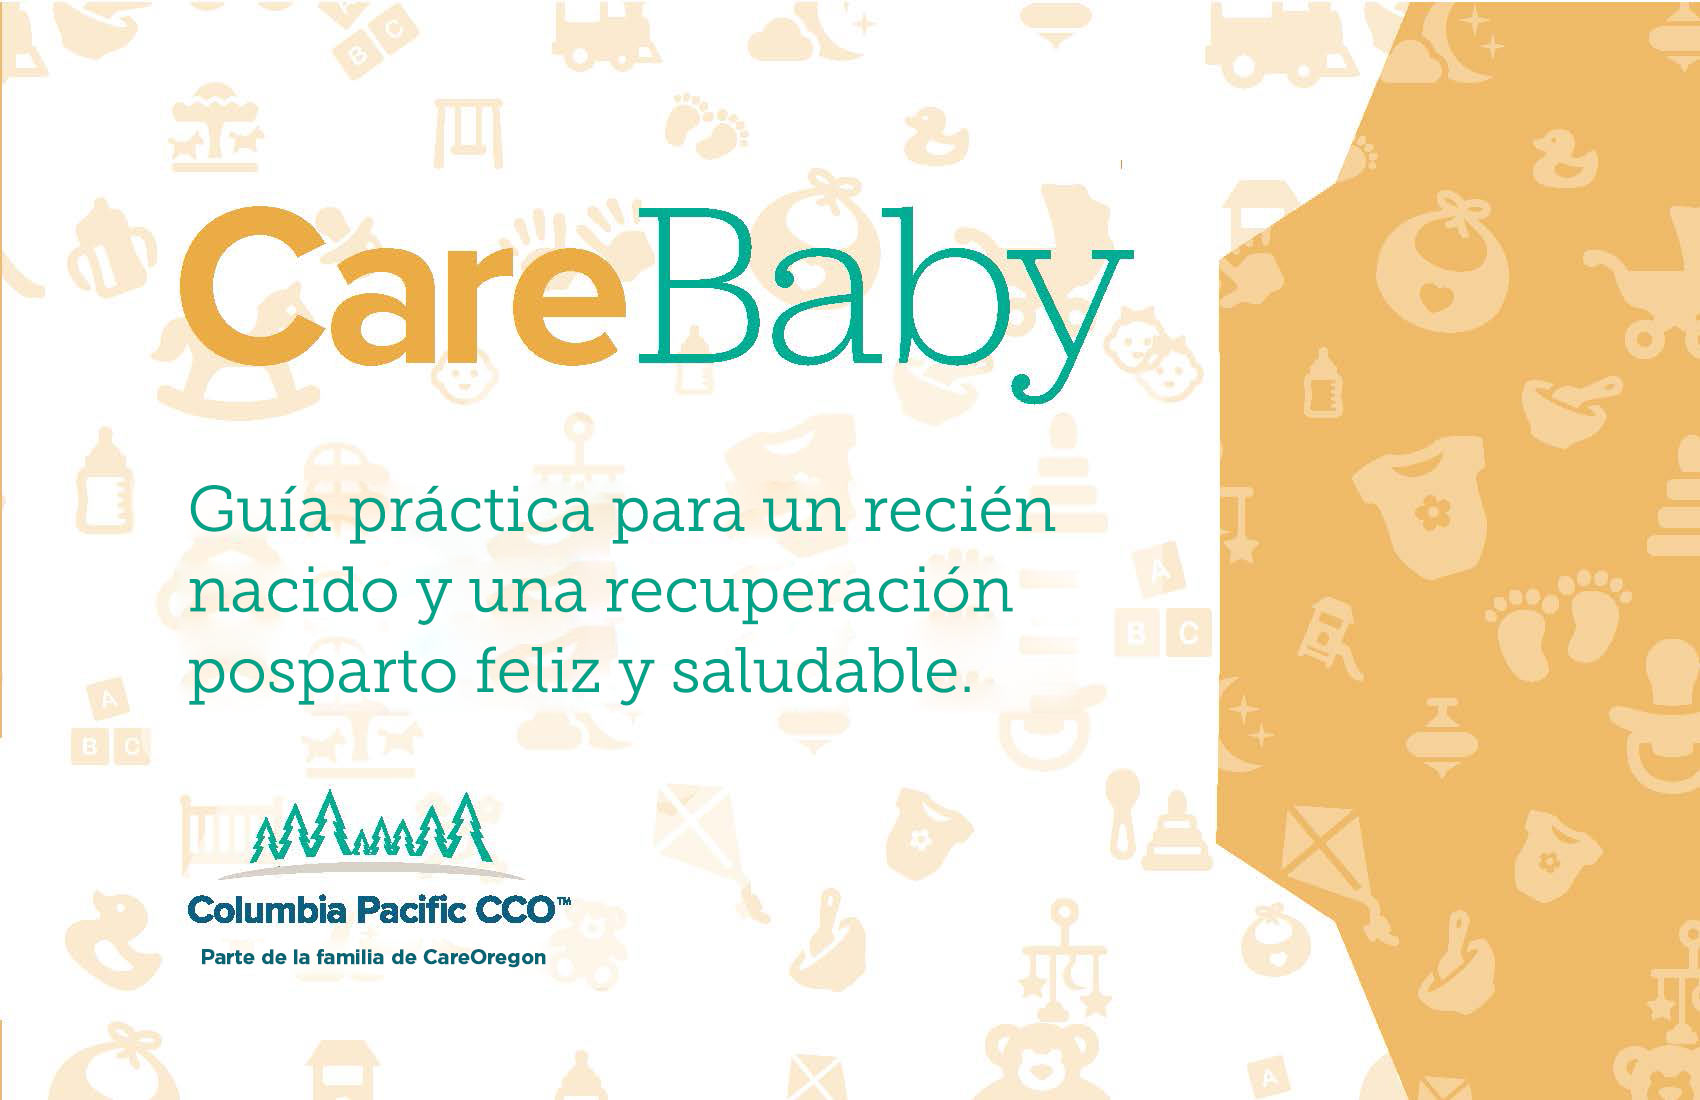 Tapa del cuadernillo sobre el recién nacido CareBaby que dice Guía práctica para un recién nacido y una recuperación posparto feliz y saludable